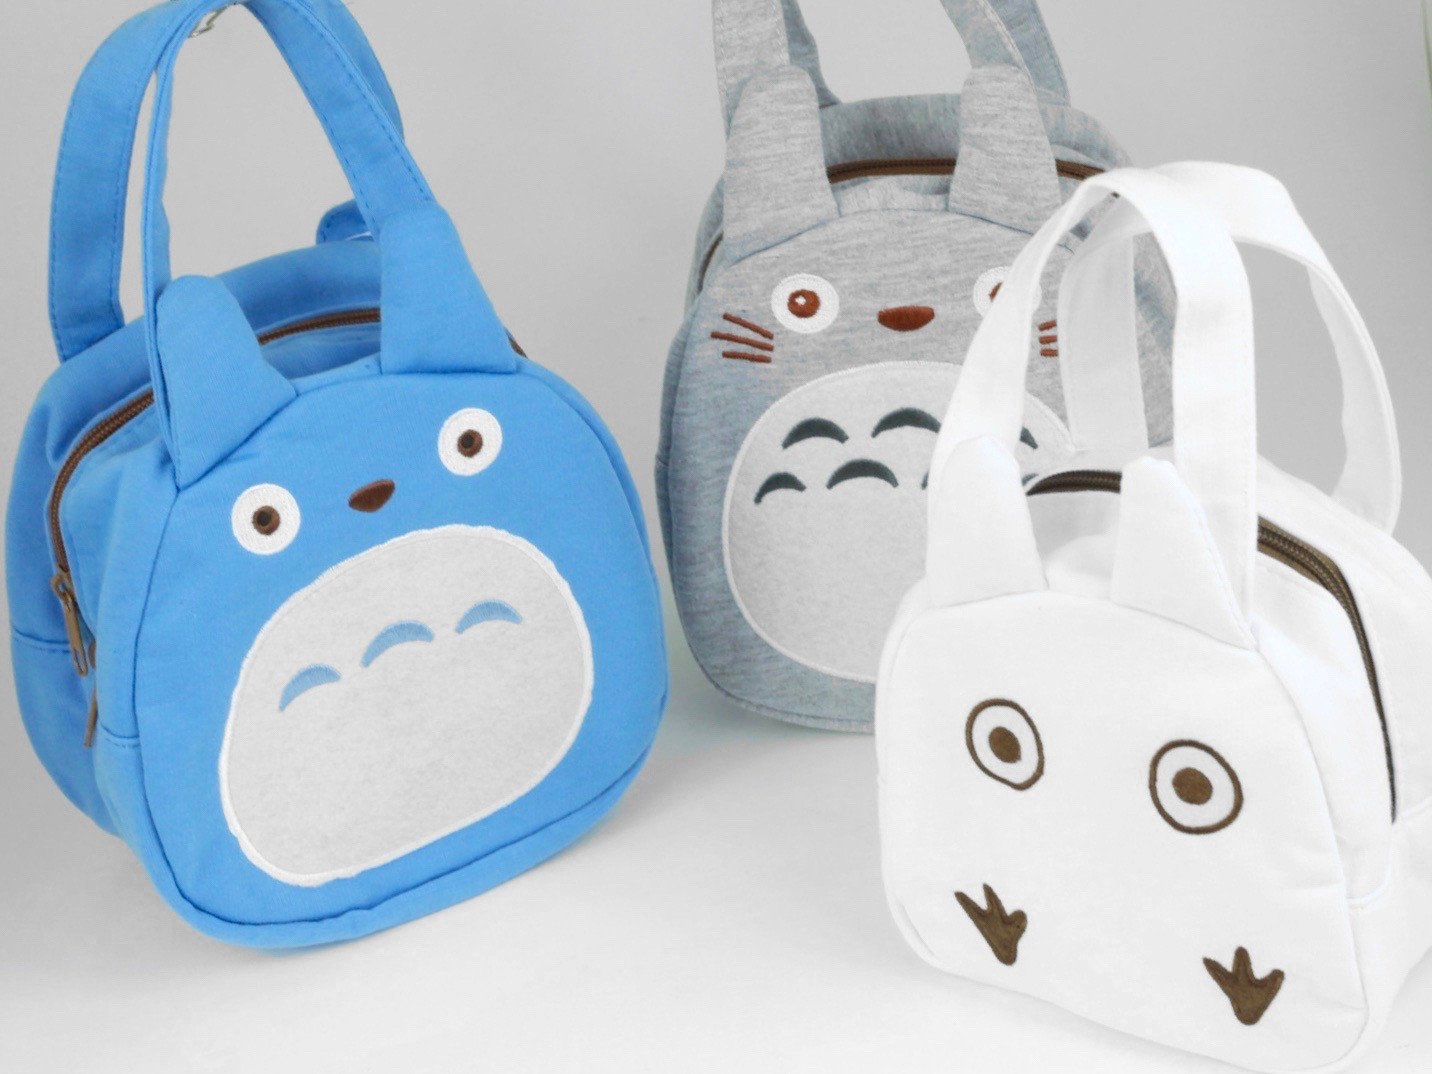 Totoro Bento Bag | Chibi White